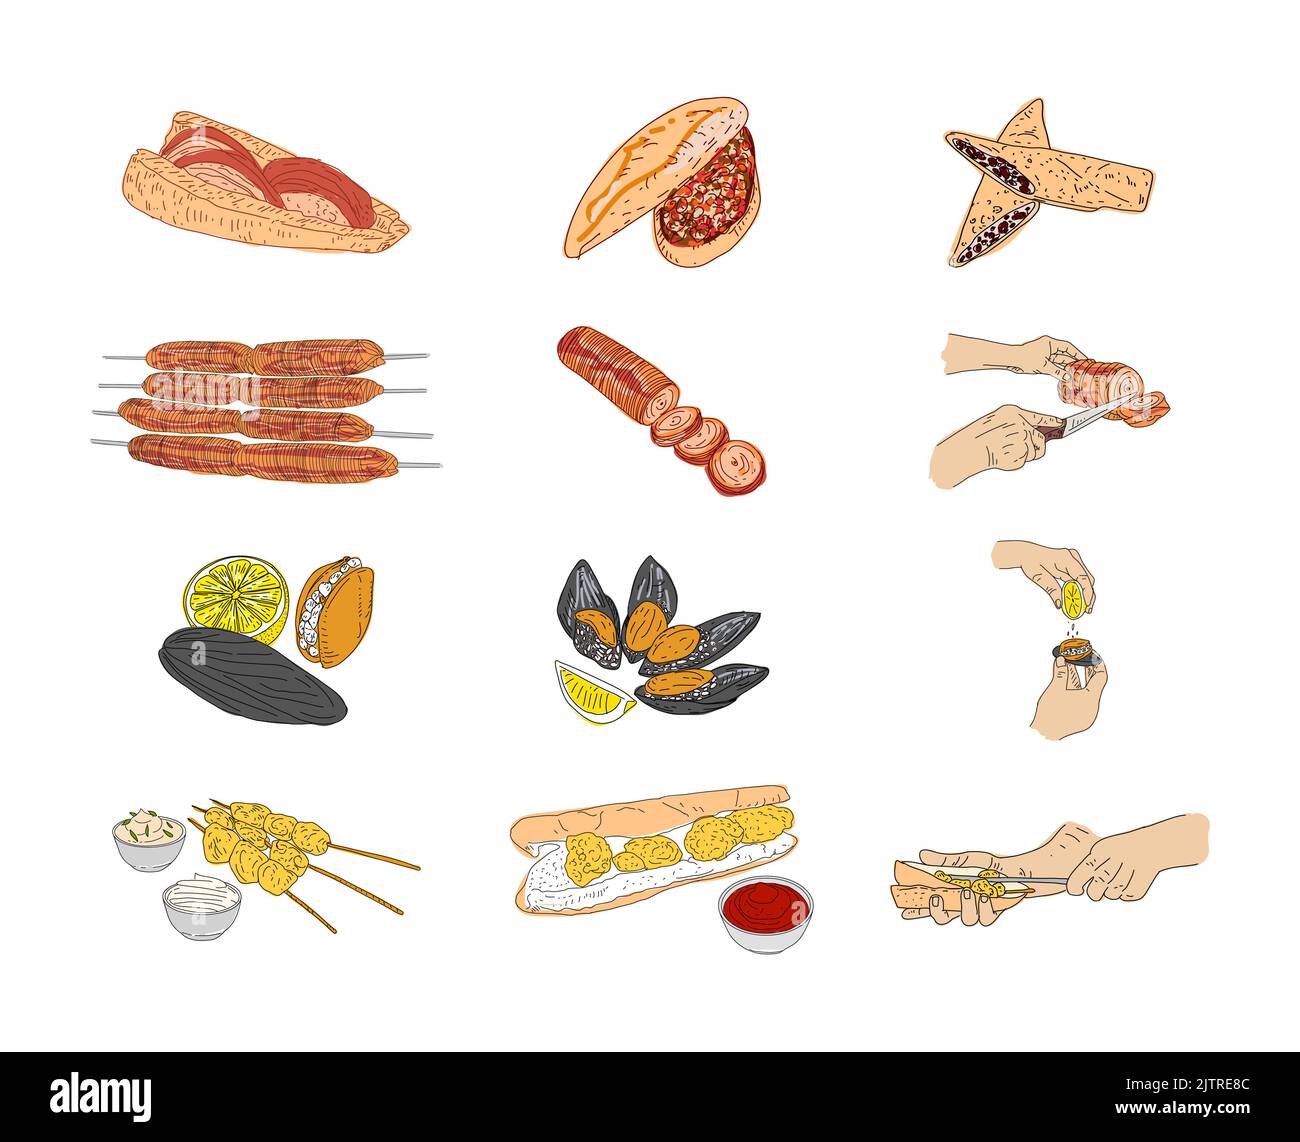 Kokorec, cozze farcite, cozze fritte, disegno vettoriale disegnato a mano. Elementi di design del menu fast food. Elemento di design per logo, poster, menu, volantino, banne Illustrazione Vettoriale